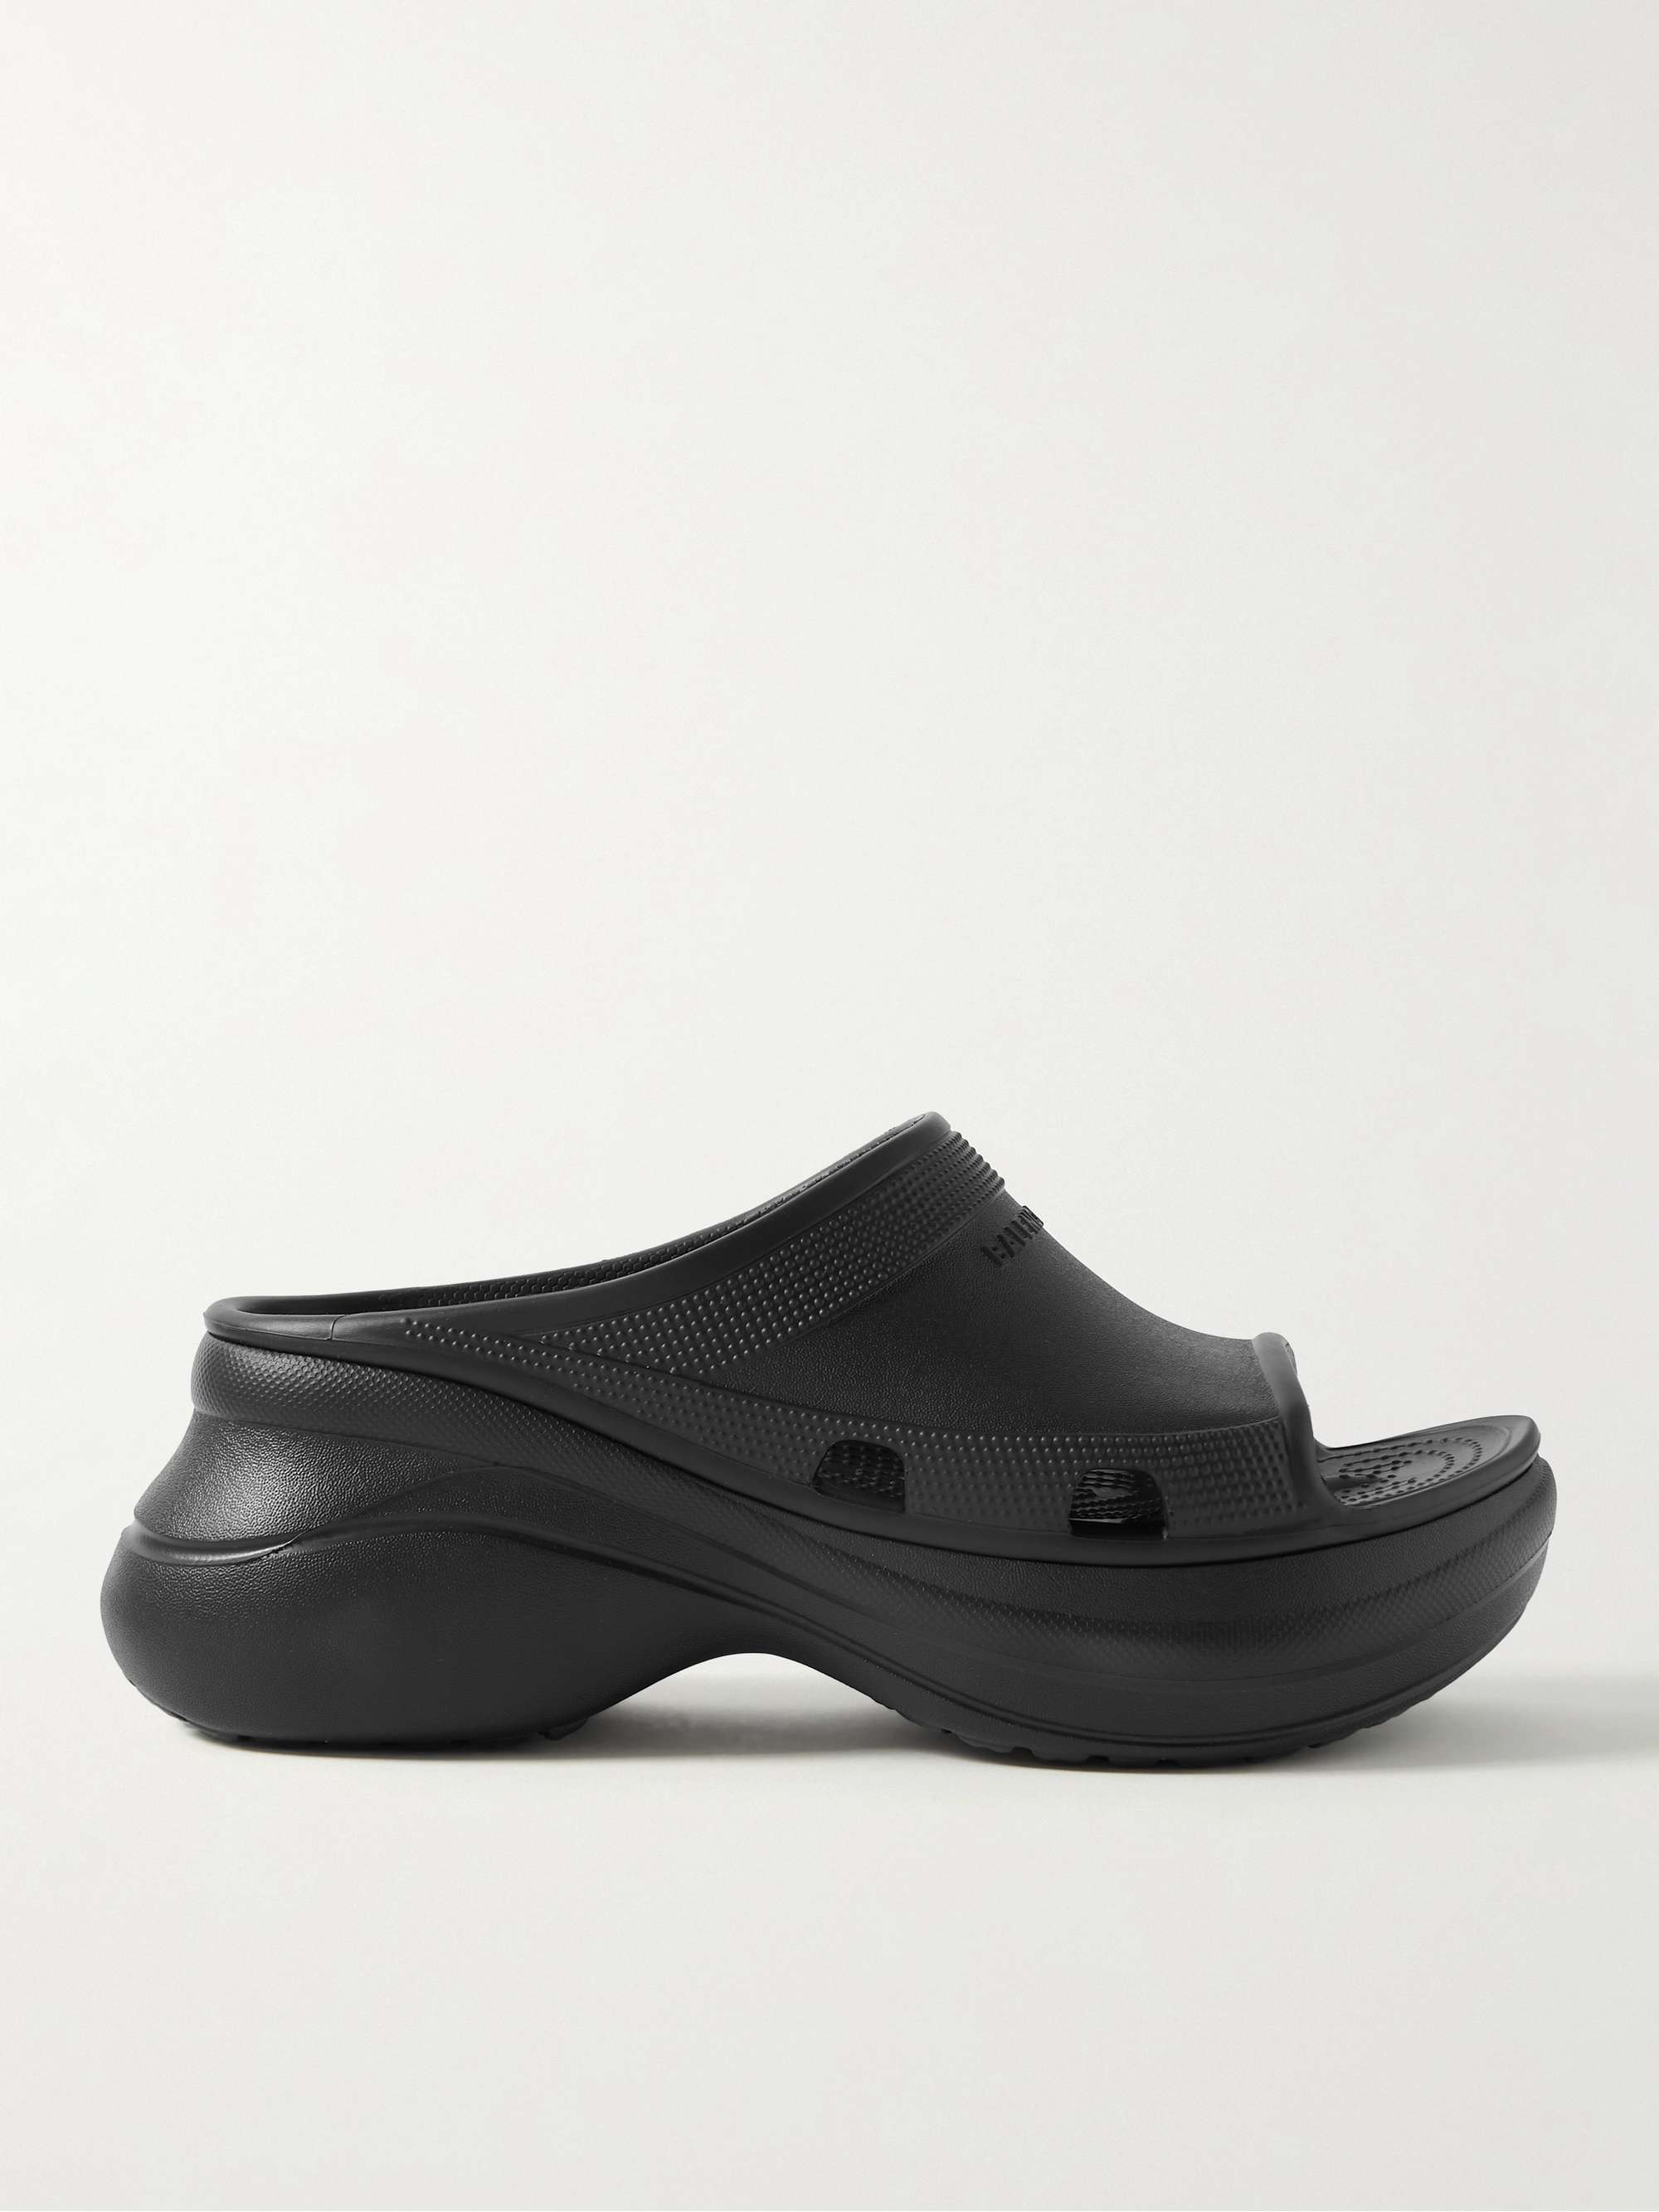 + Crocs Pool EVA Slides